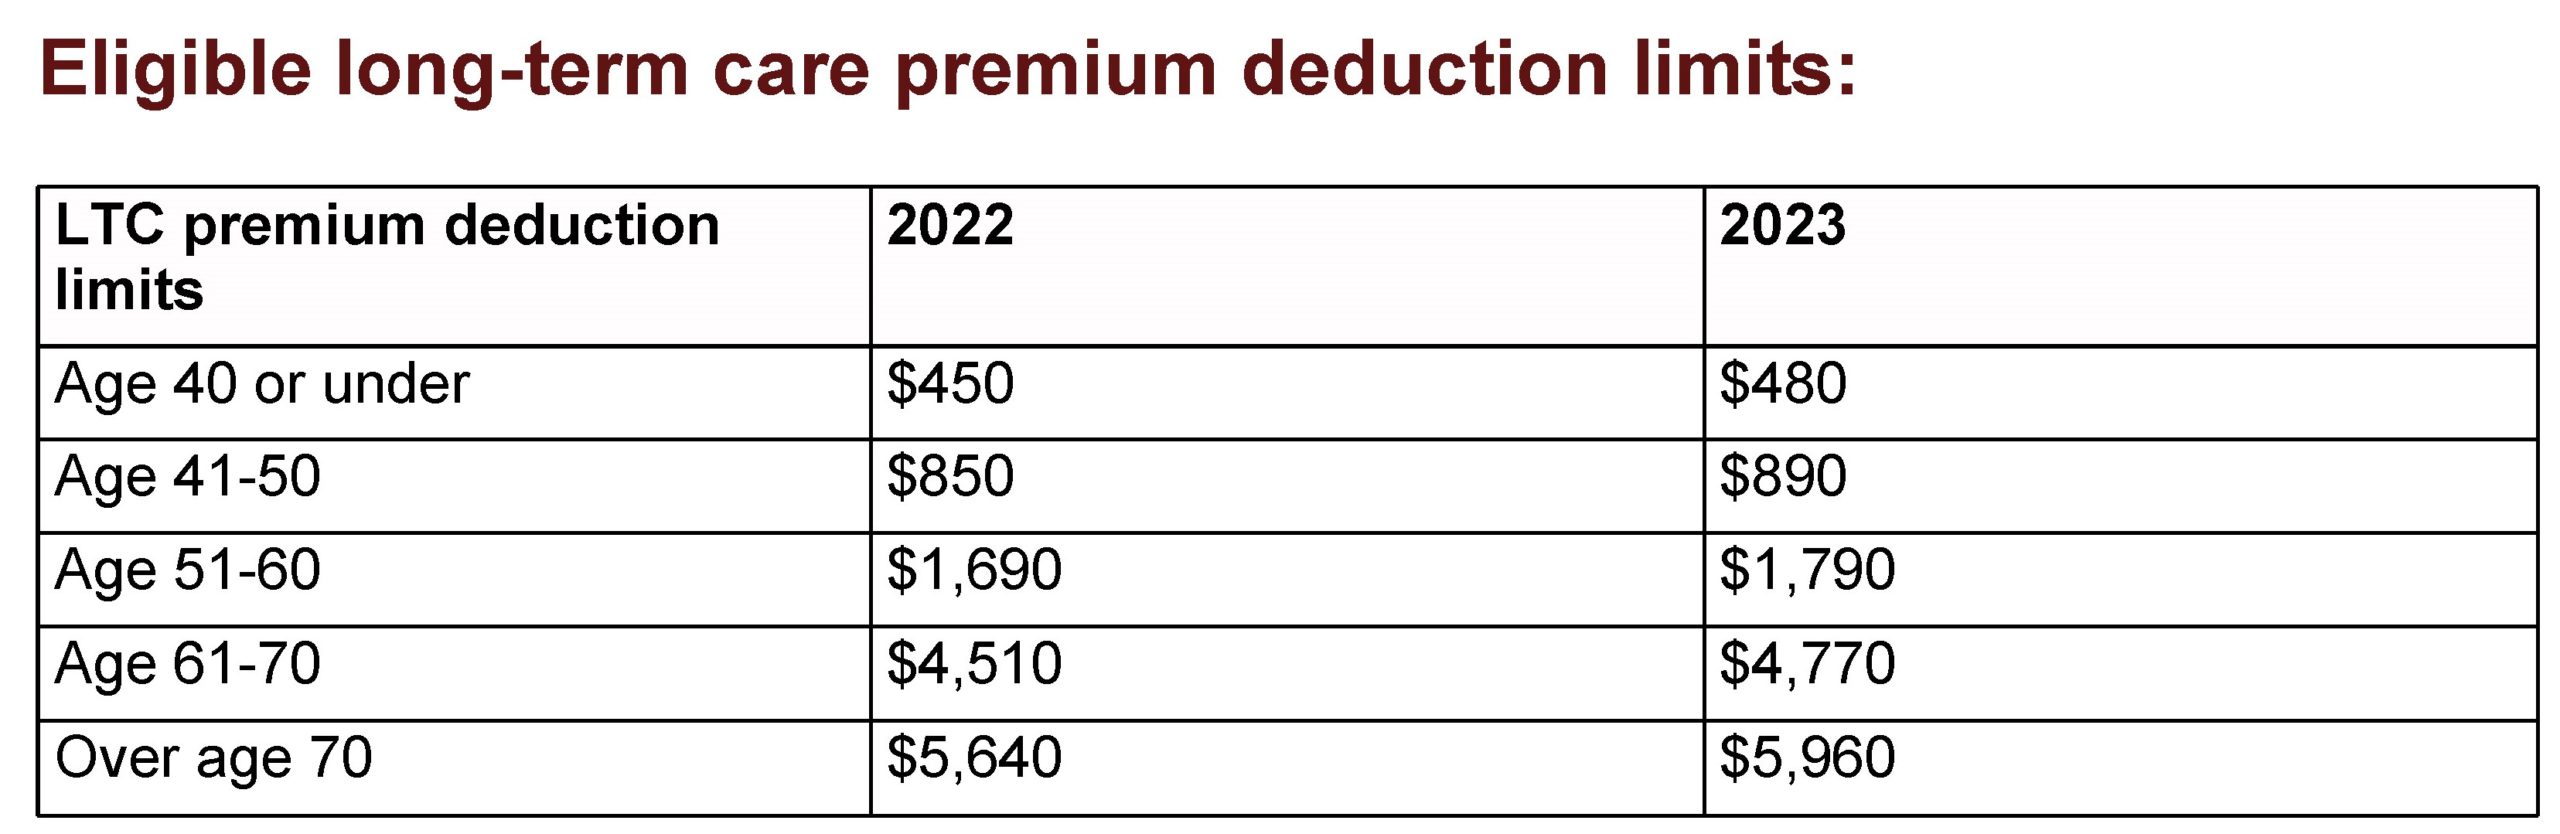 Eligible Long-Term Care Premium Deduction Limits